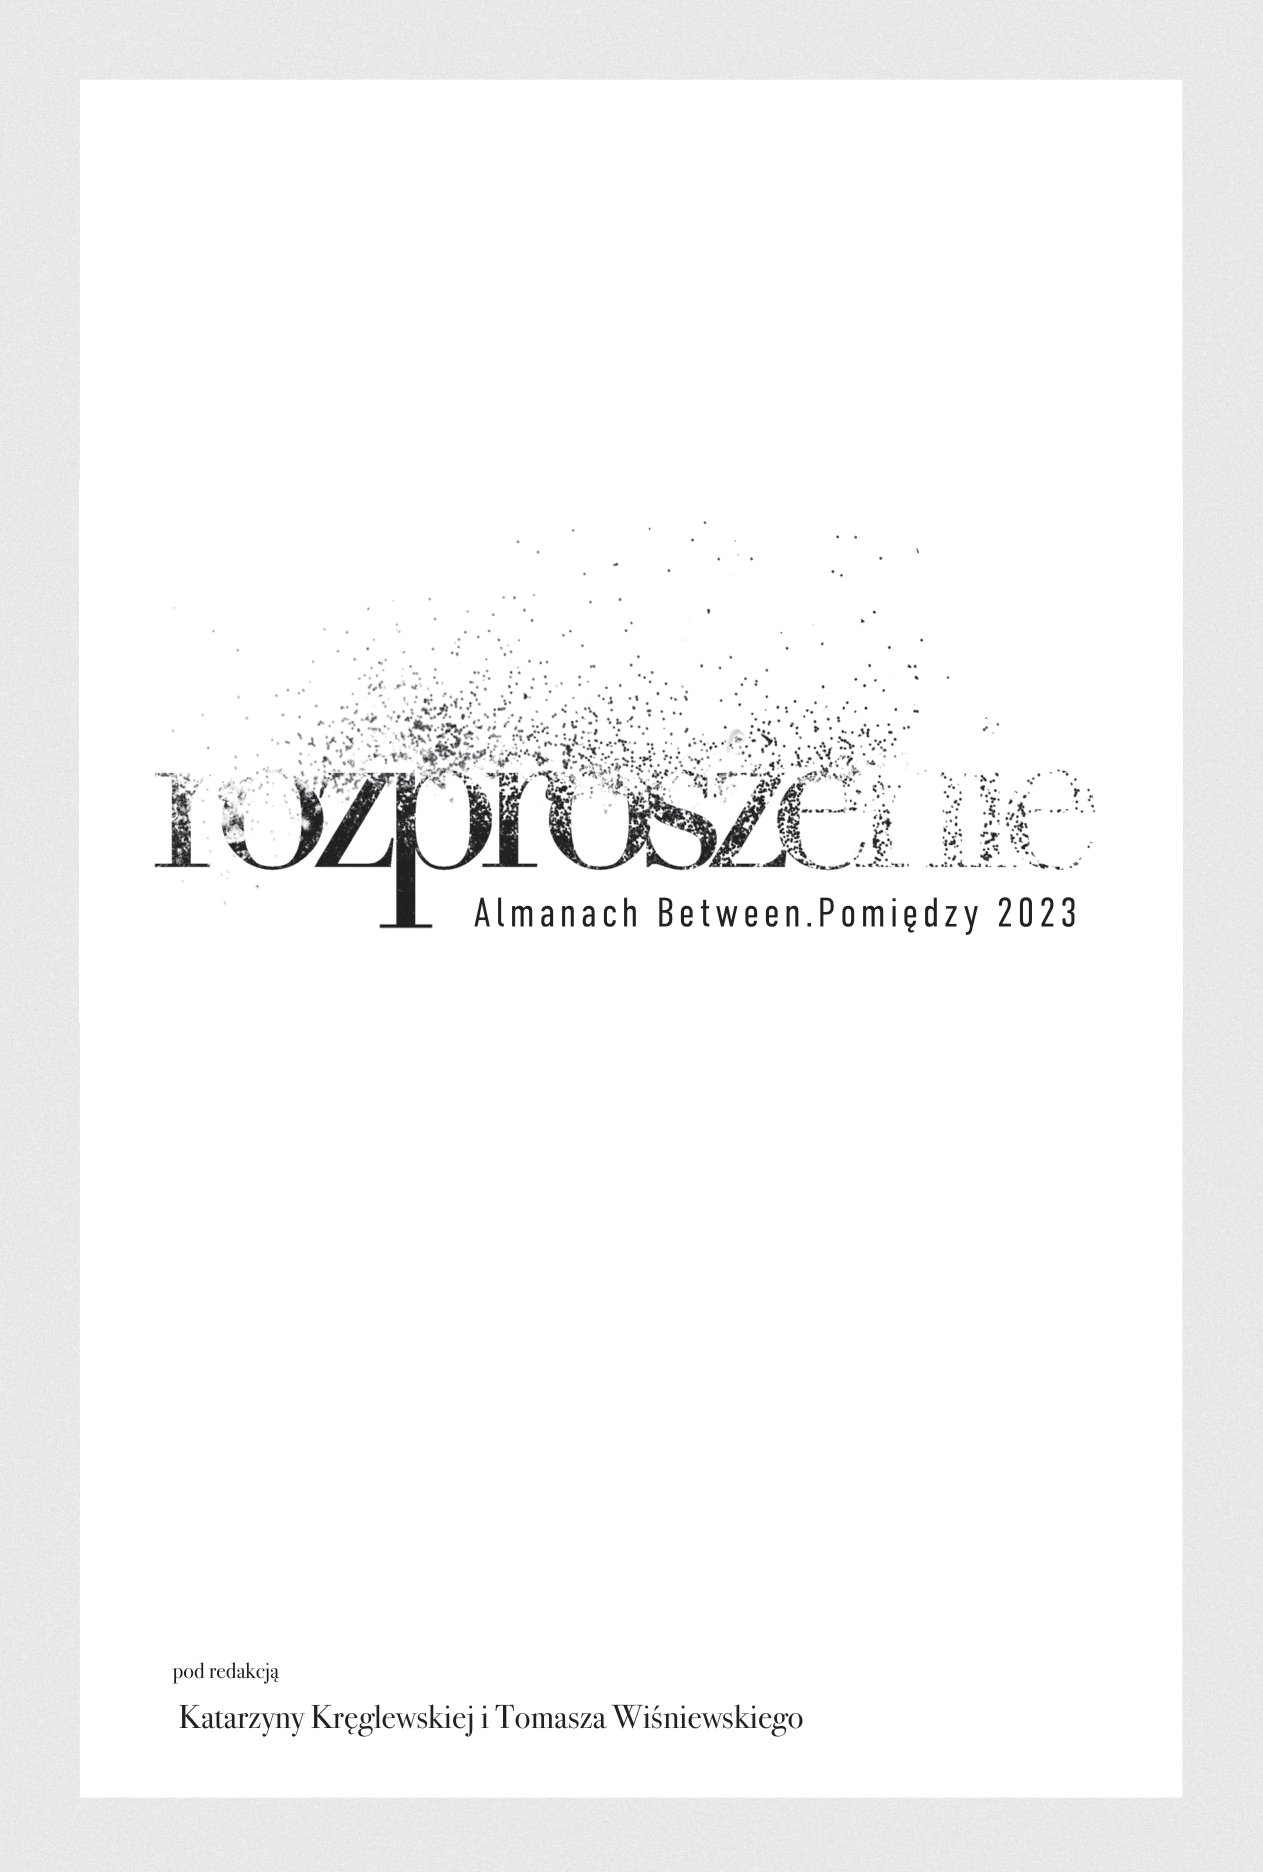 Almanach okładka montaż (grzbiet 20 mm)-2.8.02.2023-1